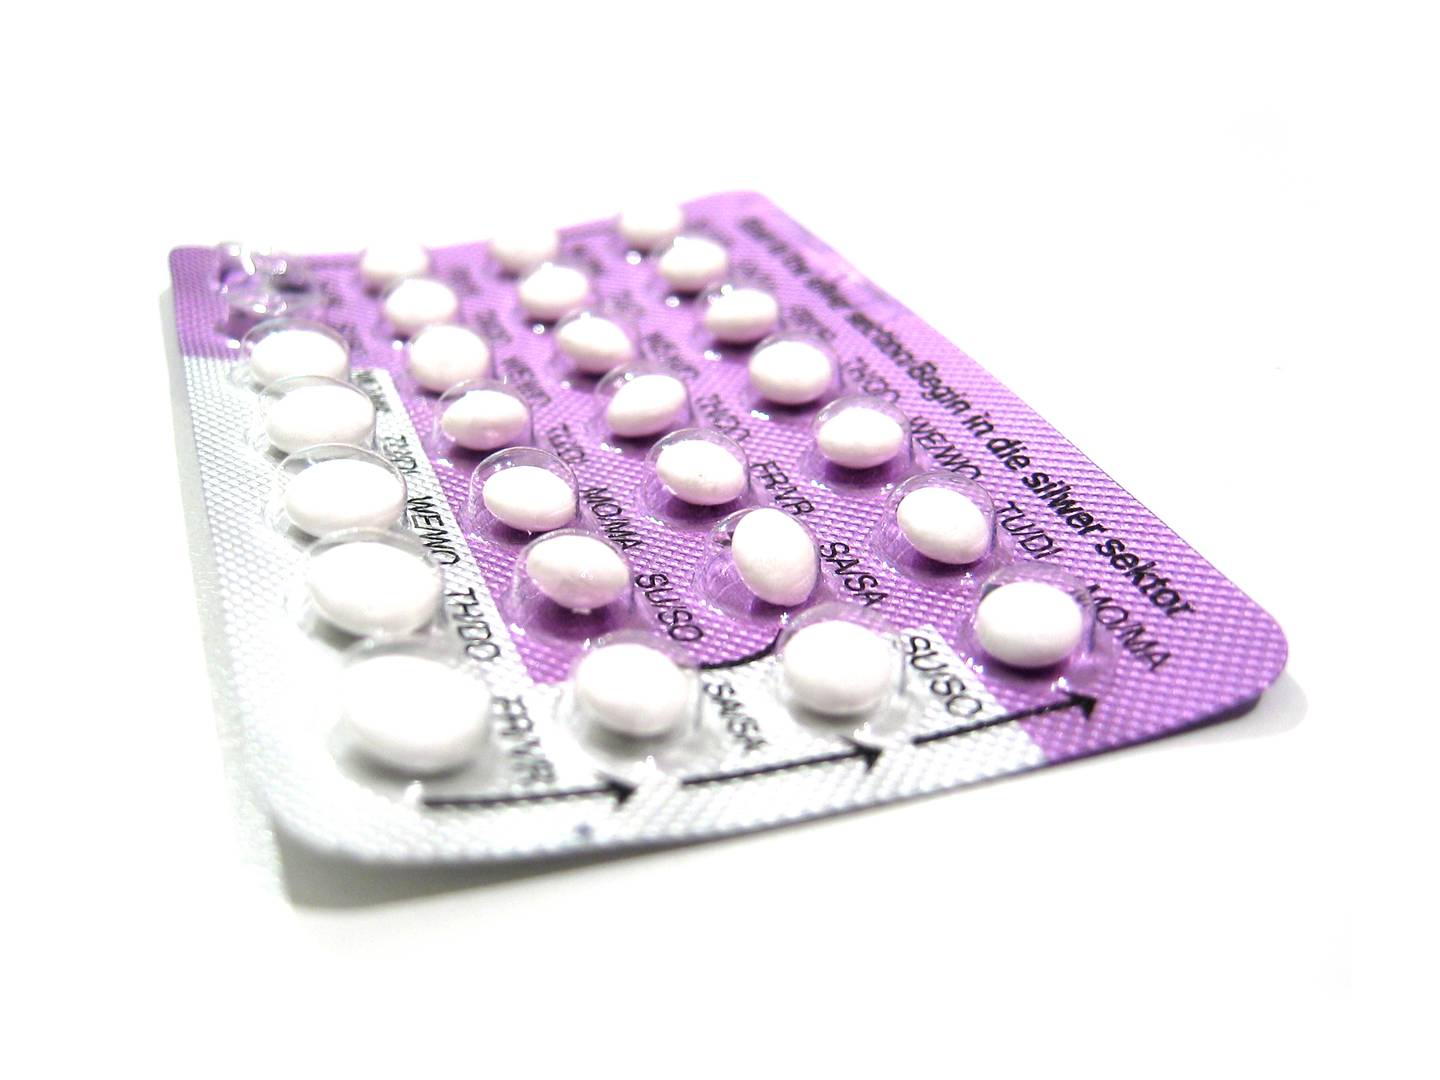 Assessores buscam venda gratuita de anticoncepcionais | Foto: Referência